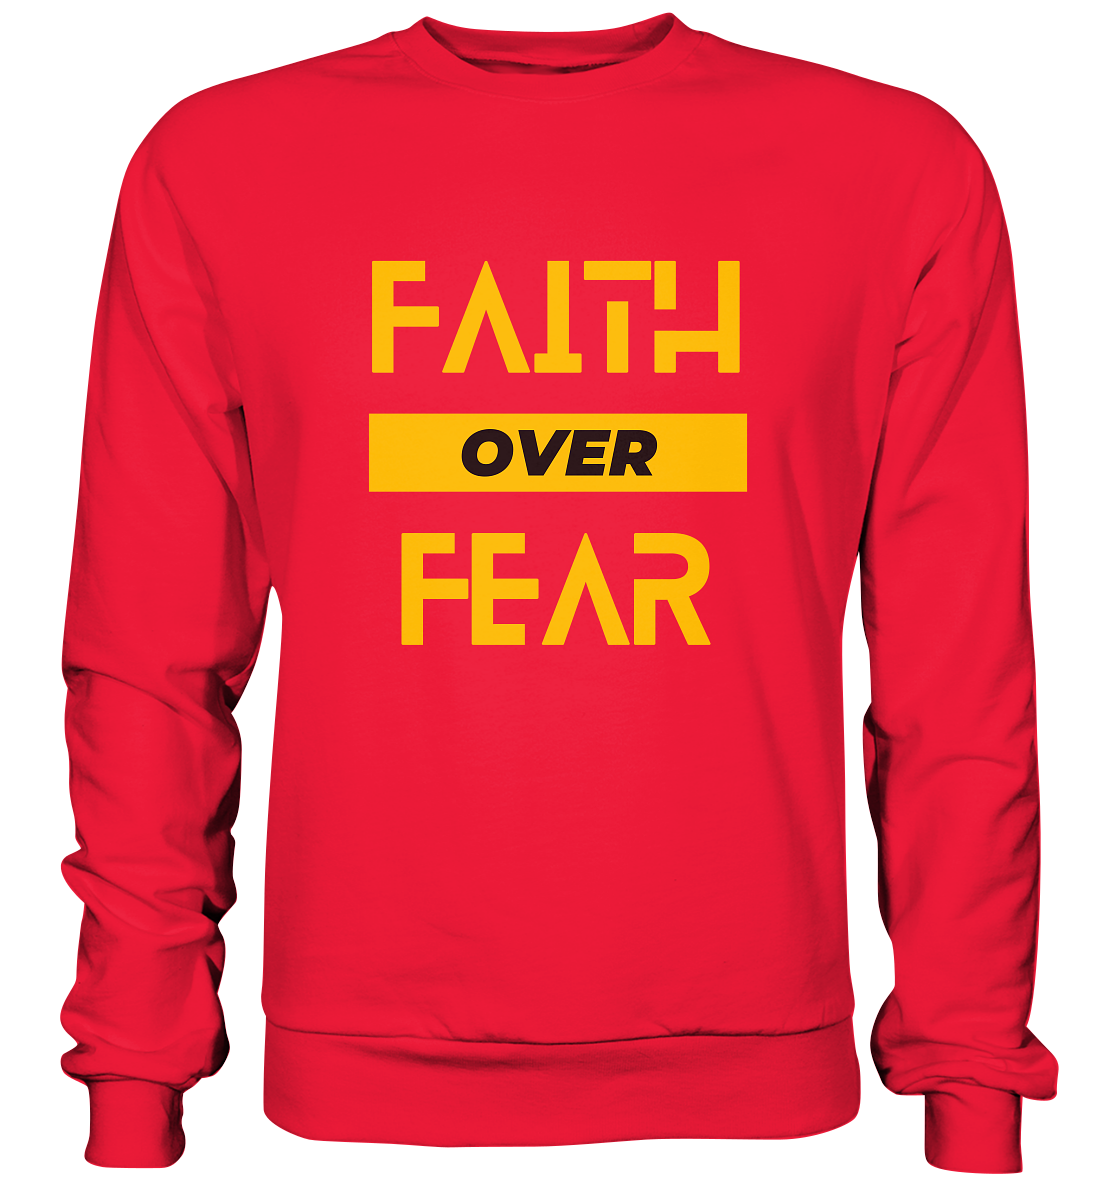 Glaube über Angst - Premium Sweatshirt